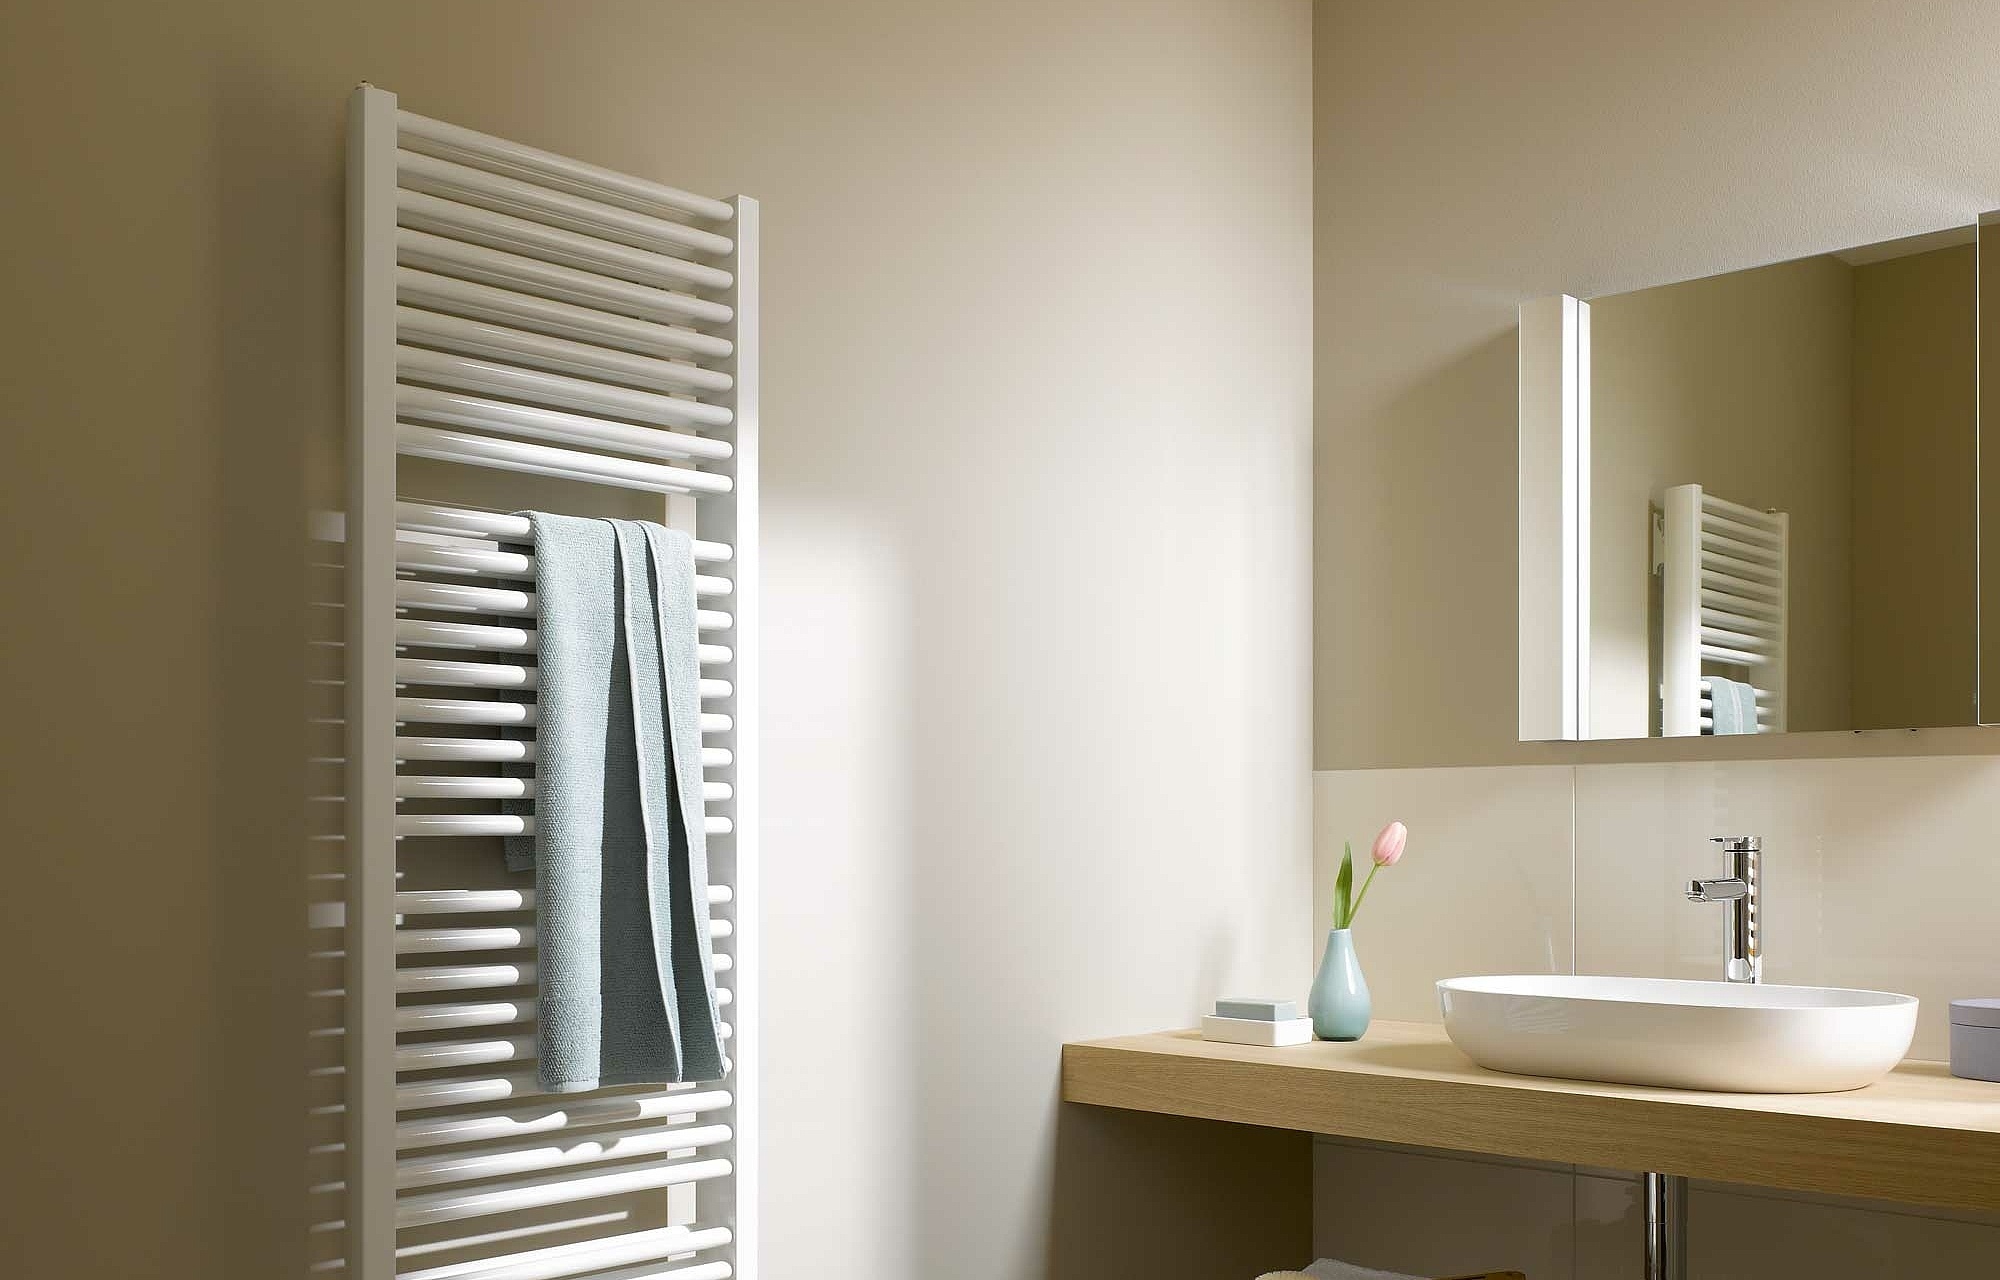 Le radiateur design et de salle de bain Duett de Kermi offre un large choix de dimensions ainsi que de nombreuses possibilités d’agencement de coloris.